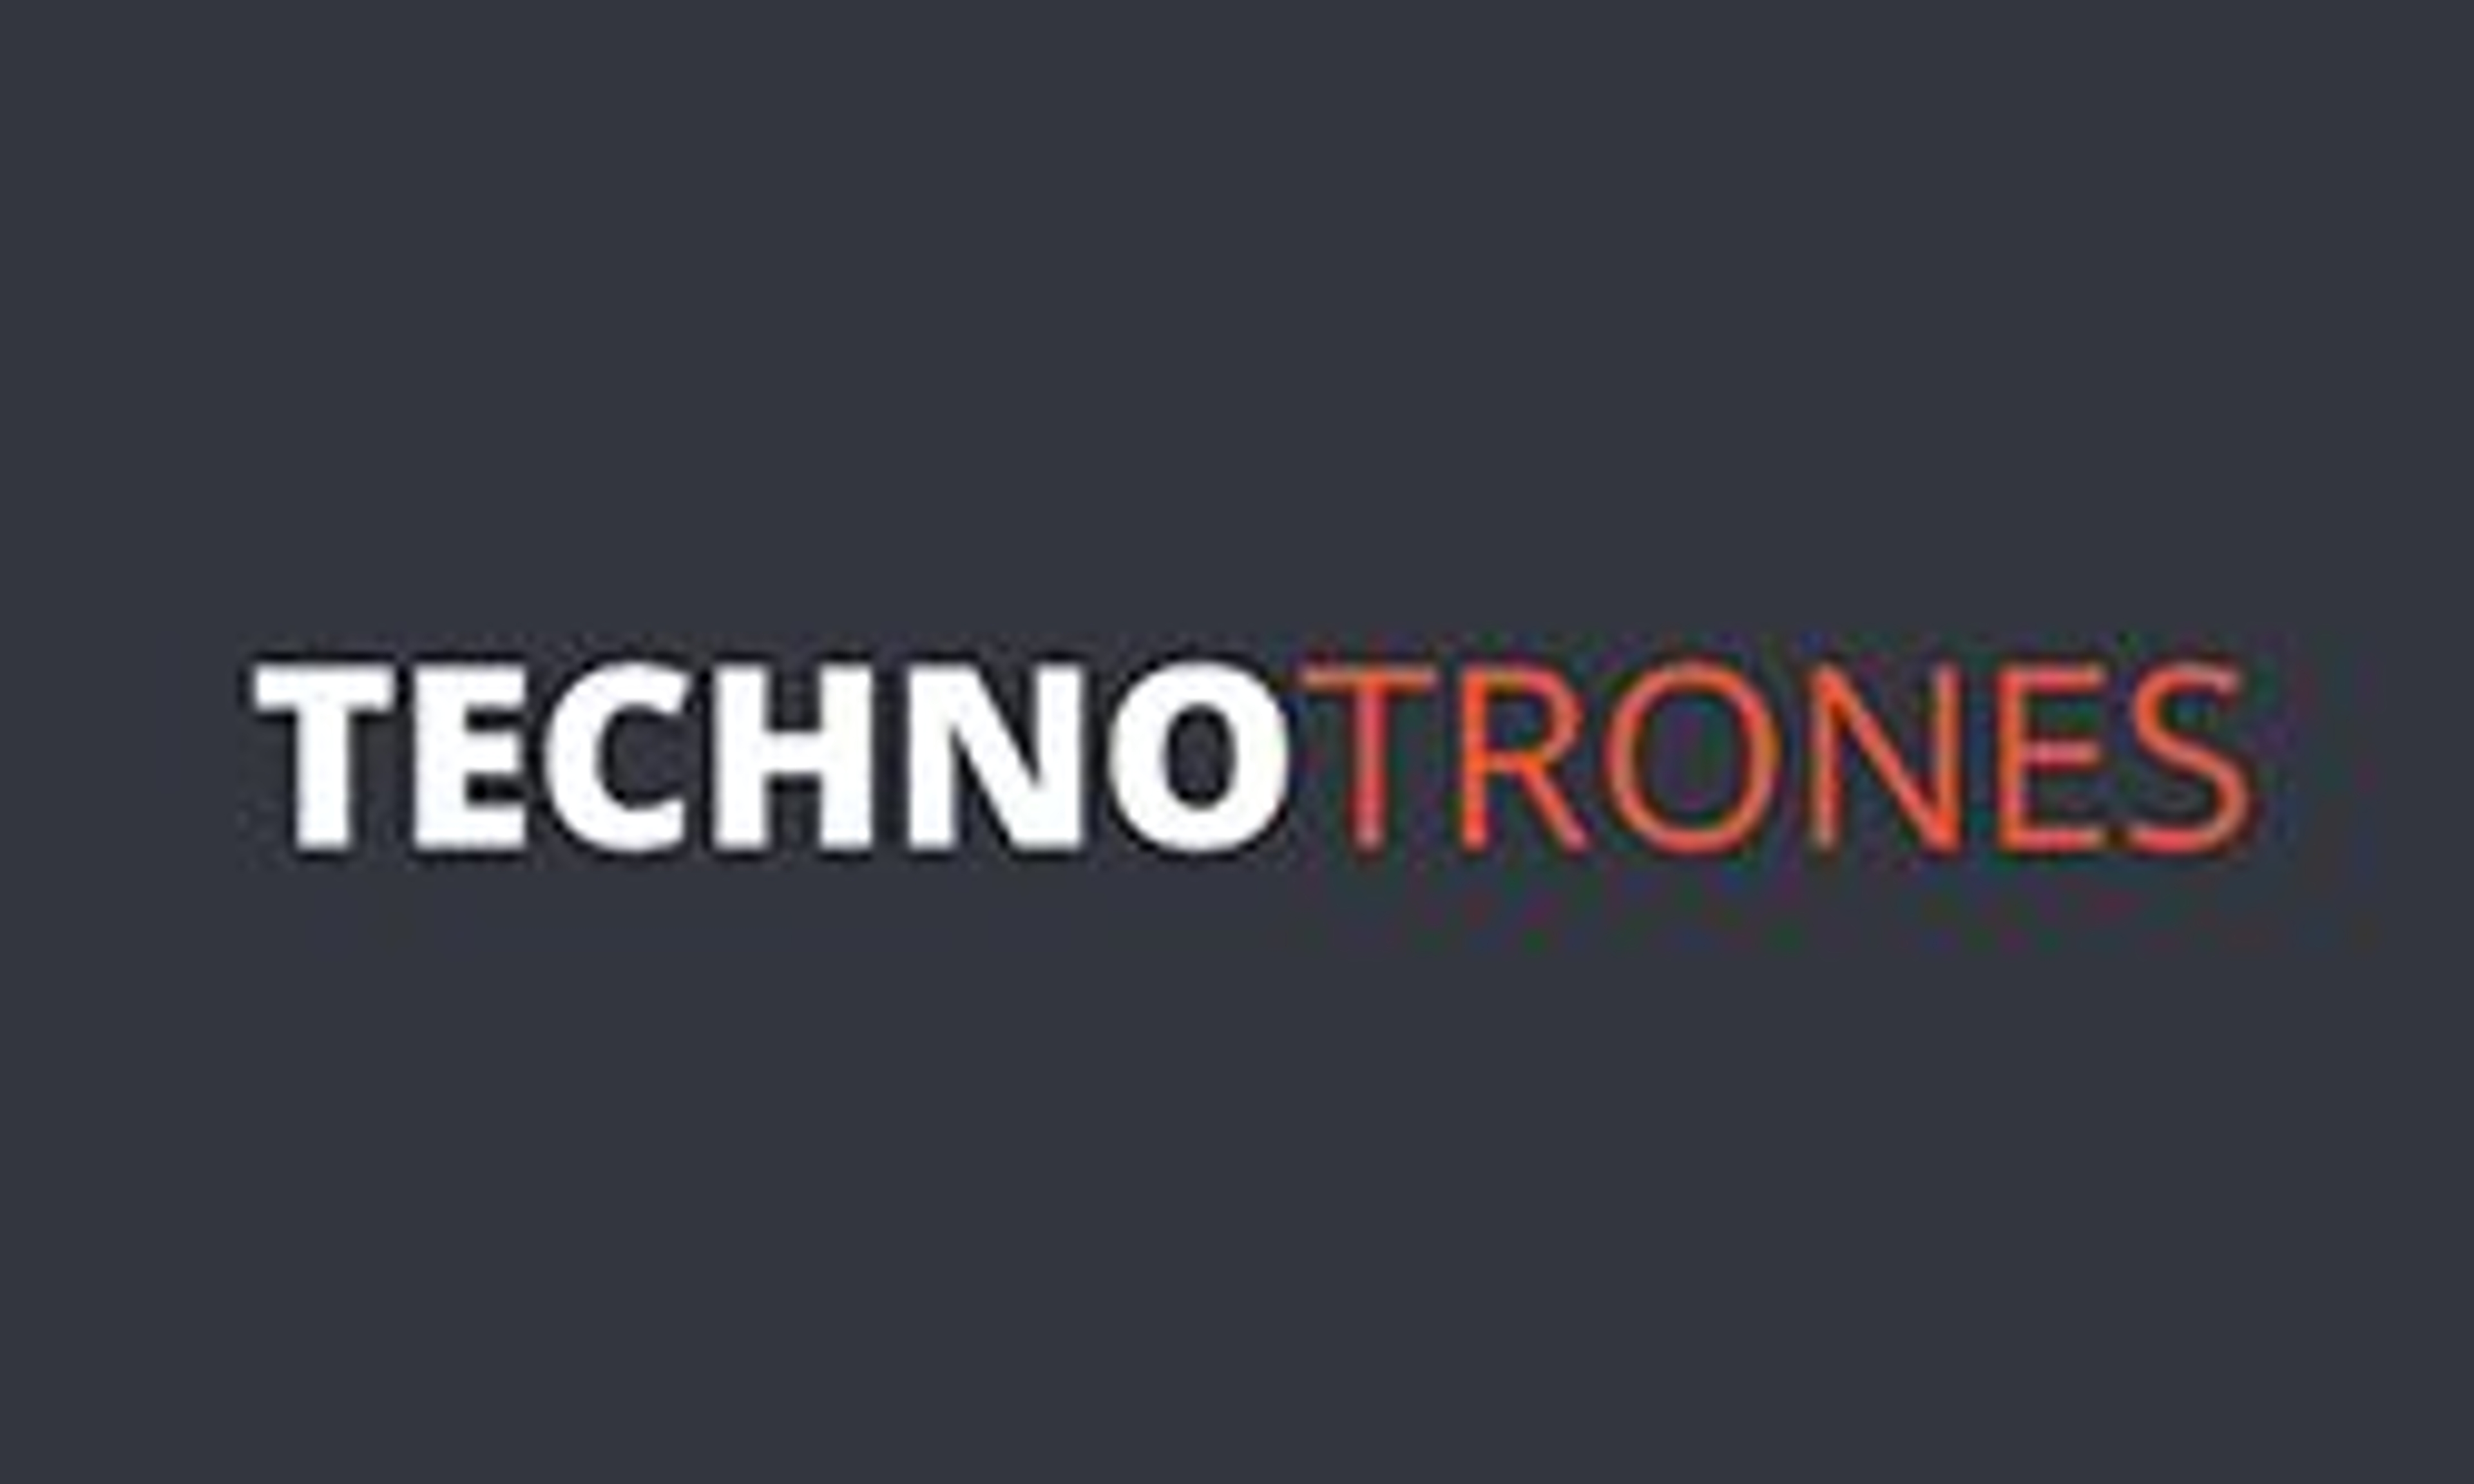 Techno tronic